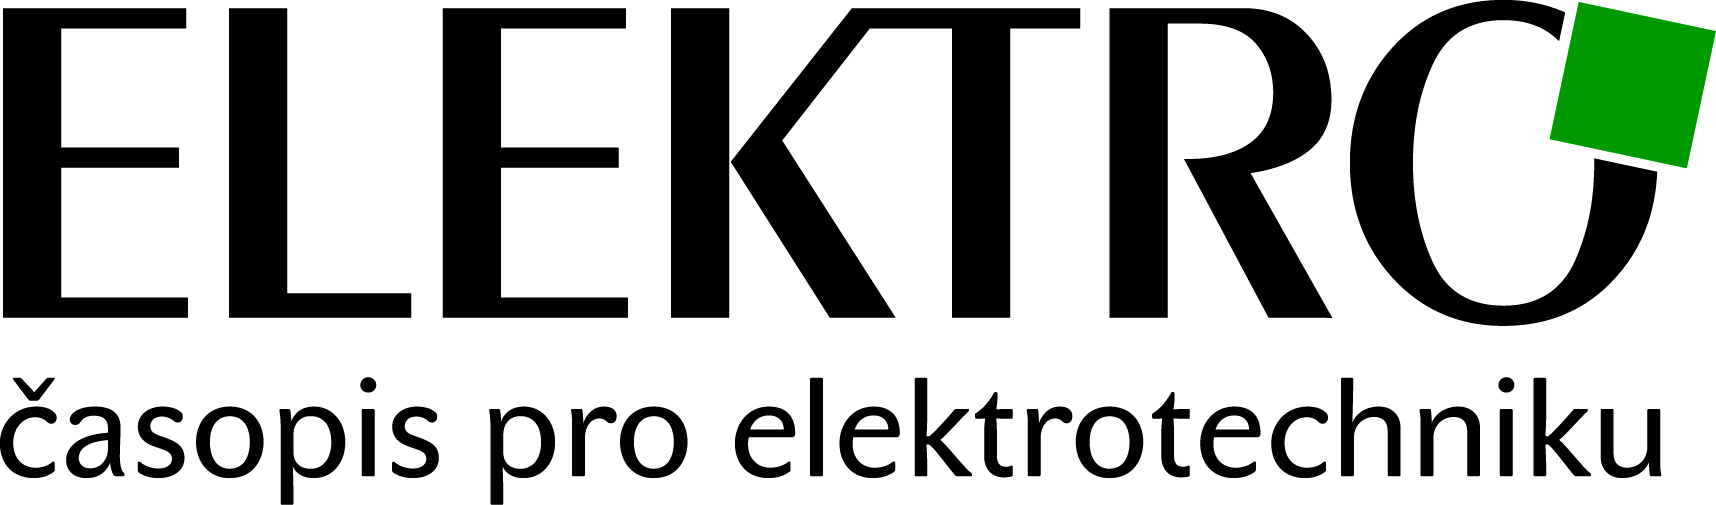 ELEKTRO, časopis pro elektrotechniku